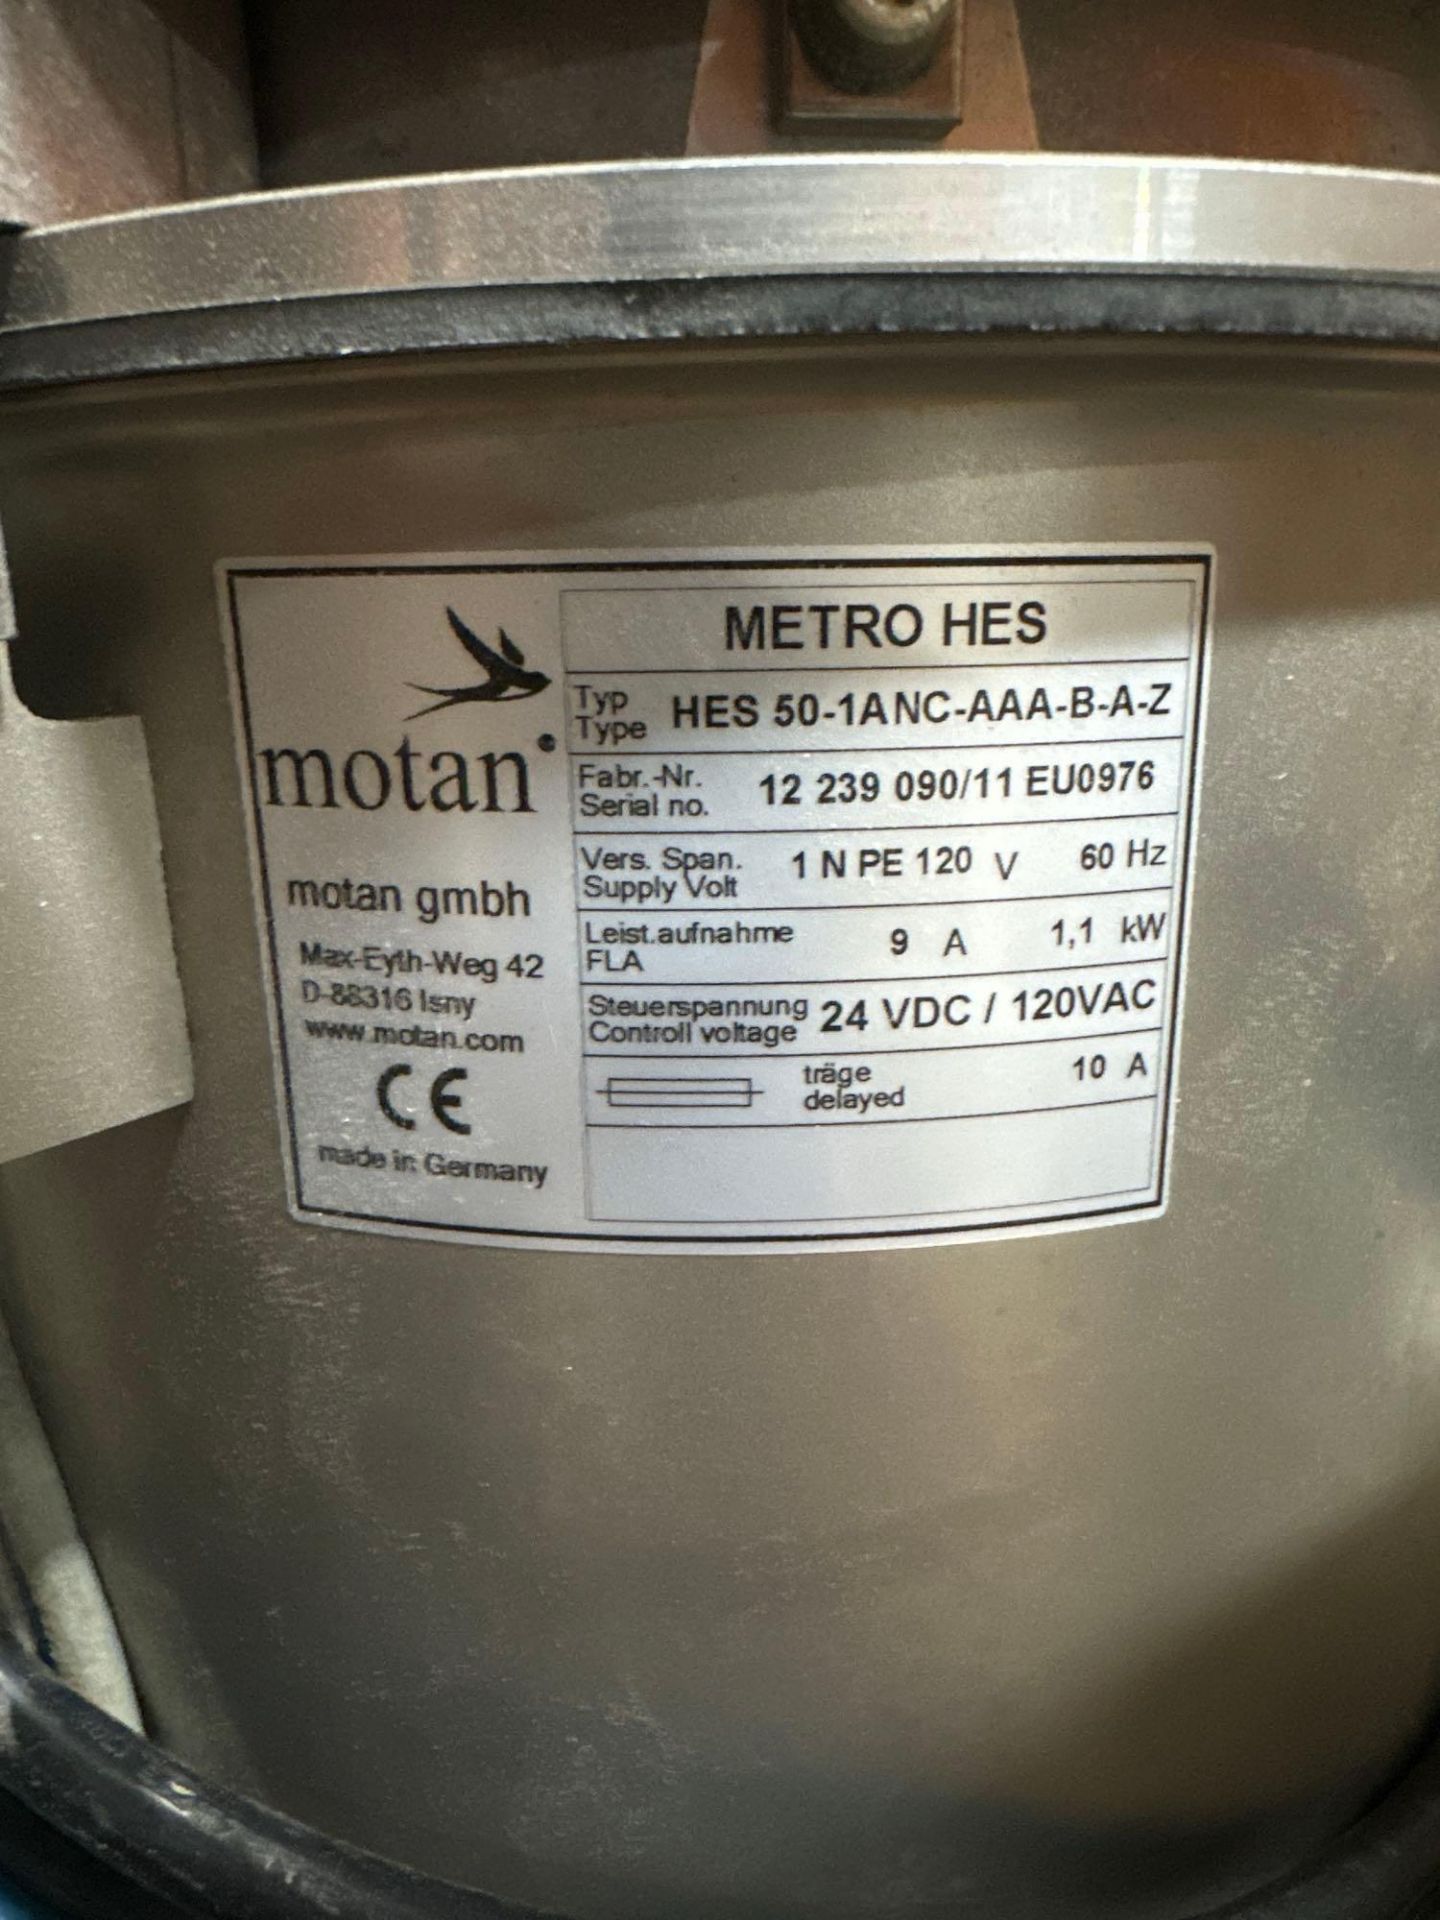 Motan Metro HES Loader, s/n 12 239 090/11 EU0976 - Image 4 of 4